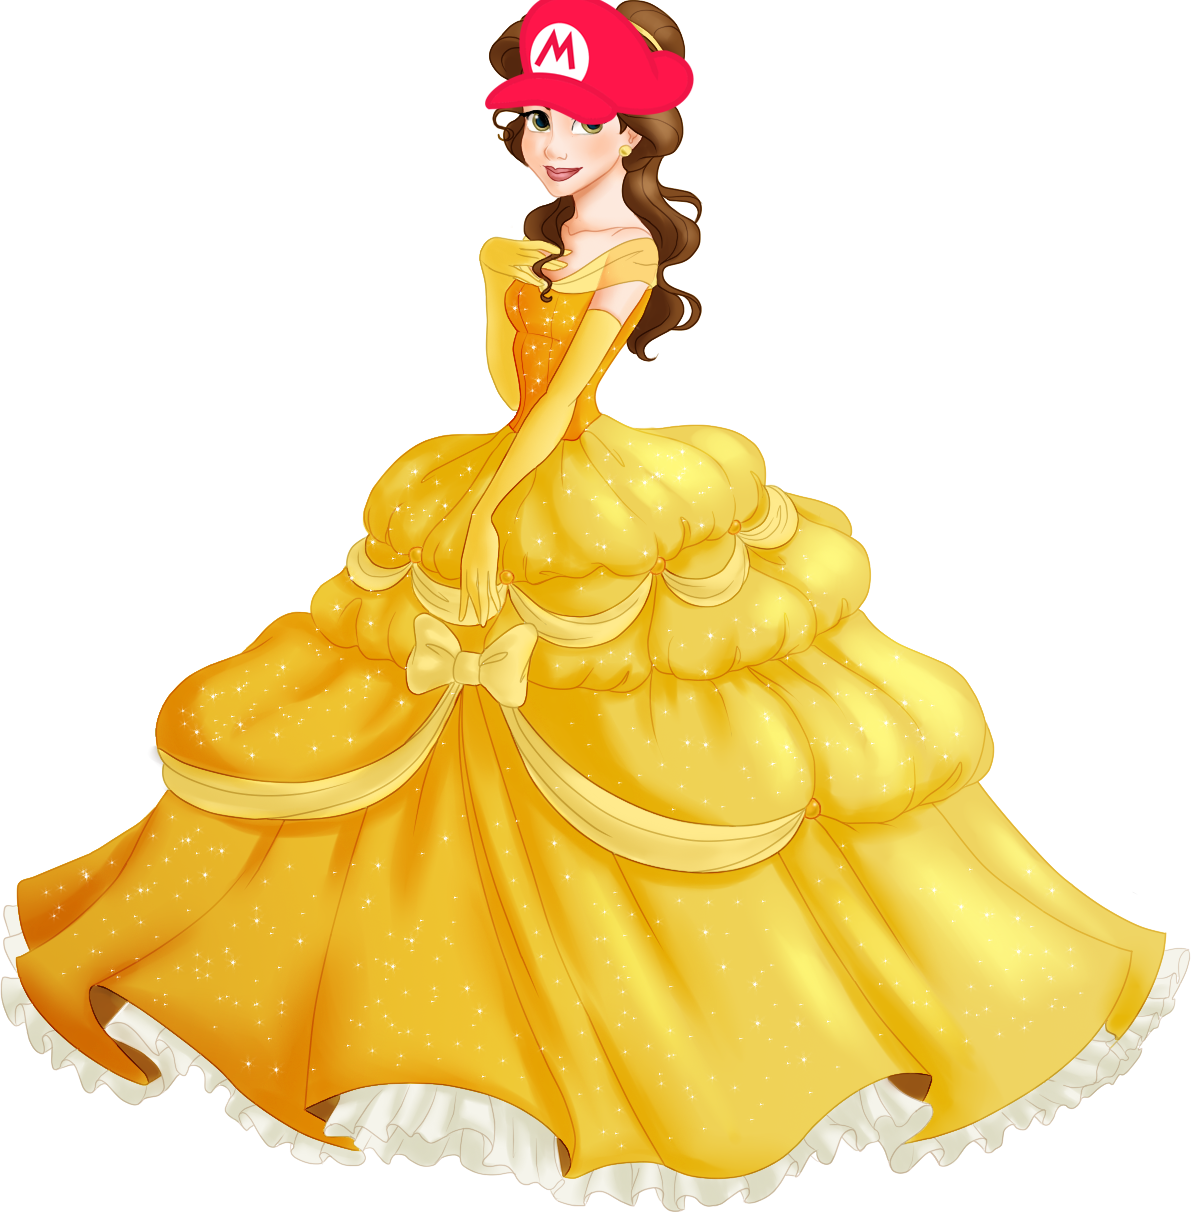 Cartoon Characters Wearing Mario Hats | YAYOMG!